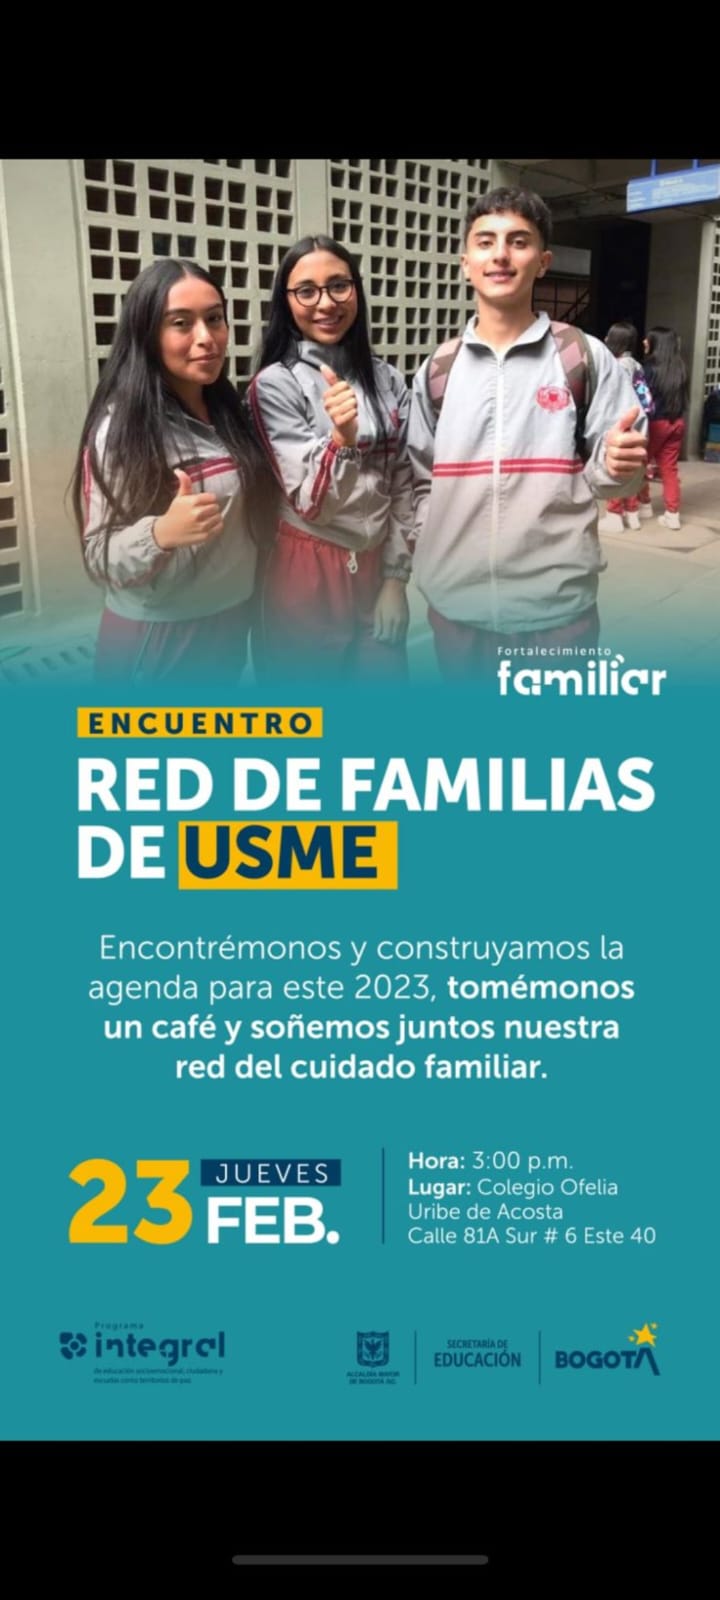 "encuentro RED DE FAMILIAS DE USME